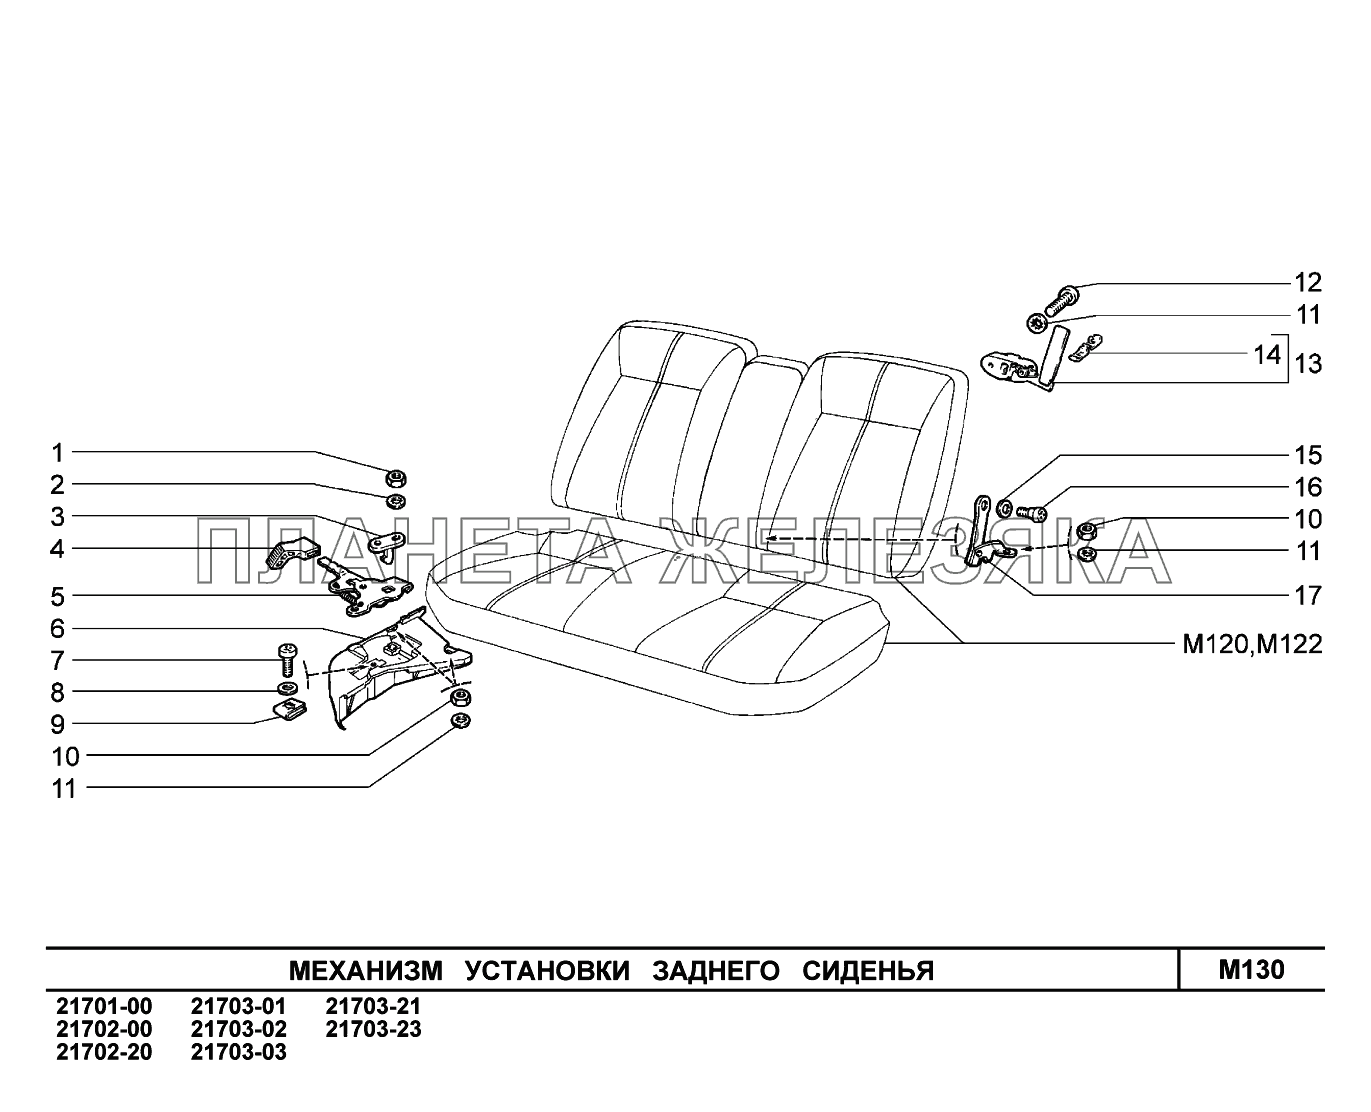 M130. Механизм установки заднего сиденья ВАЗ-2170 